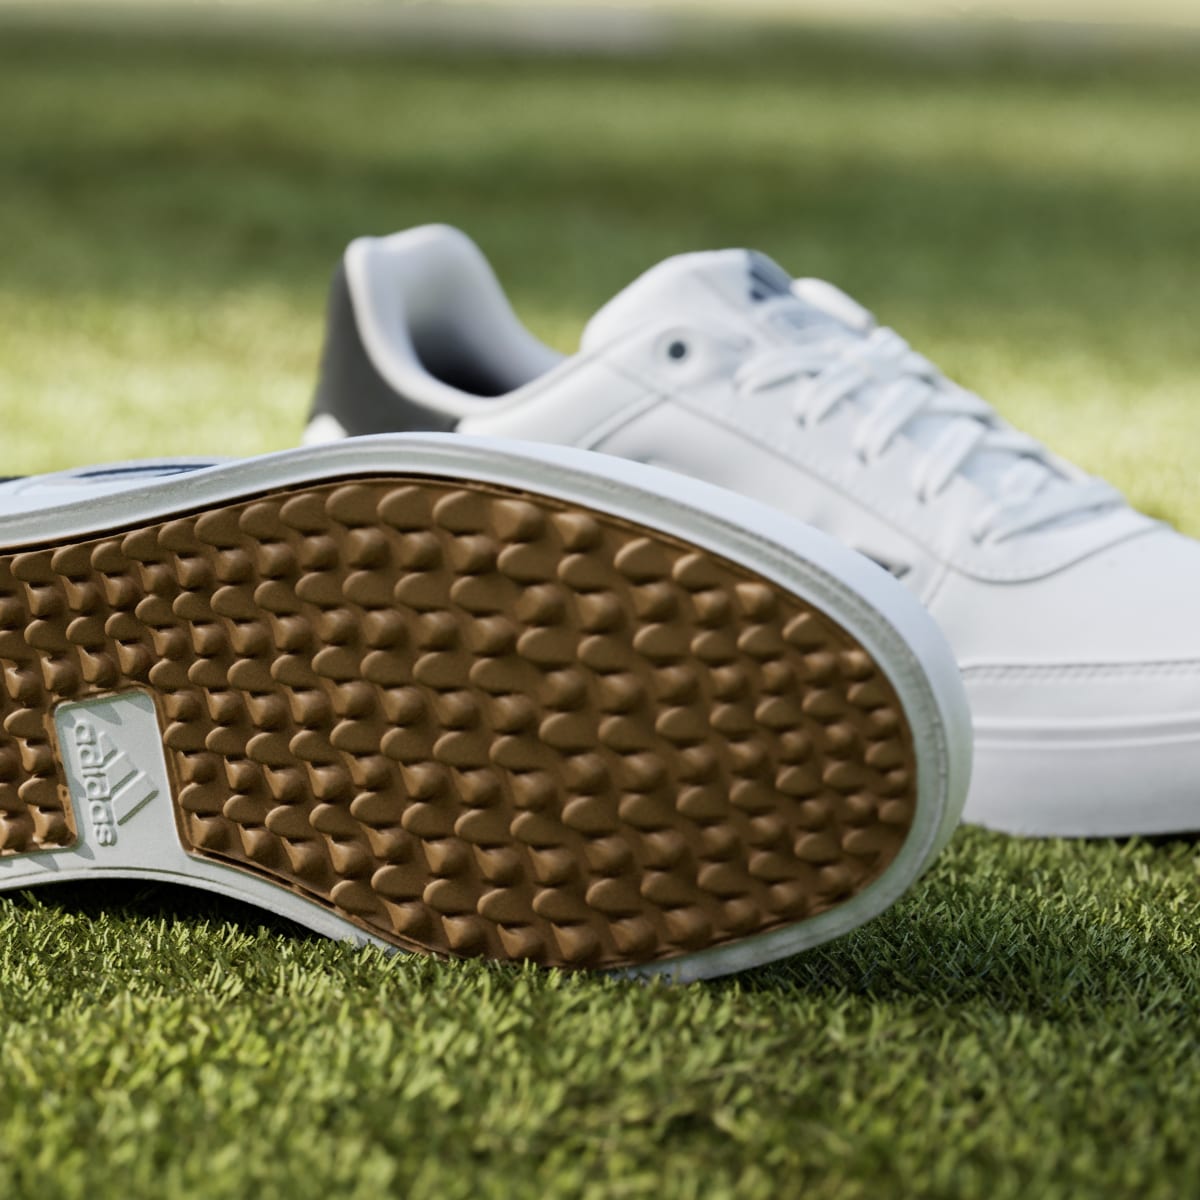 Adidas Retrocross 24 Spikeless Golfschuh. 8